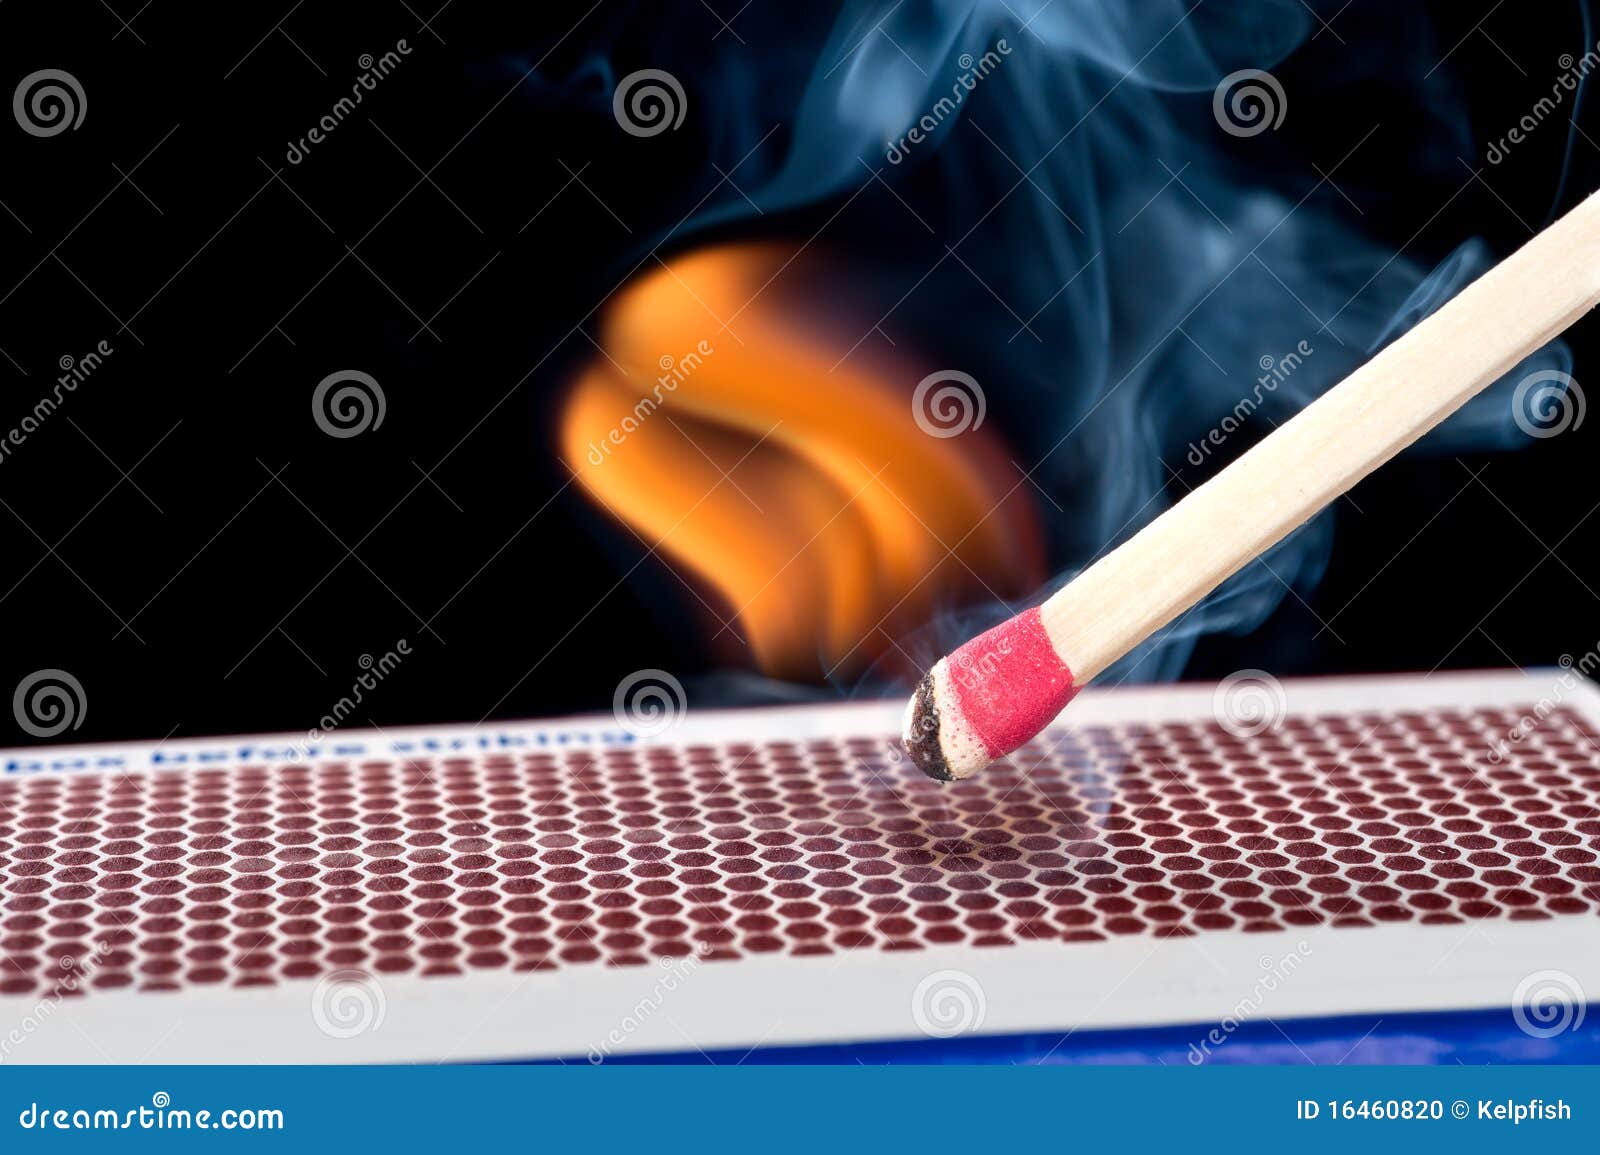 matchstick on fire